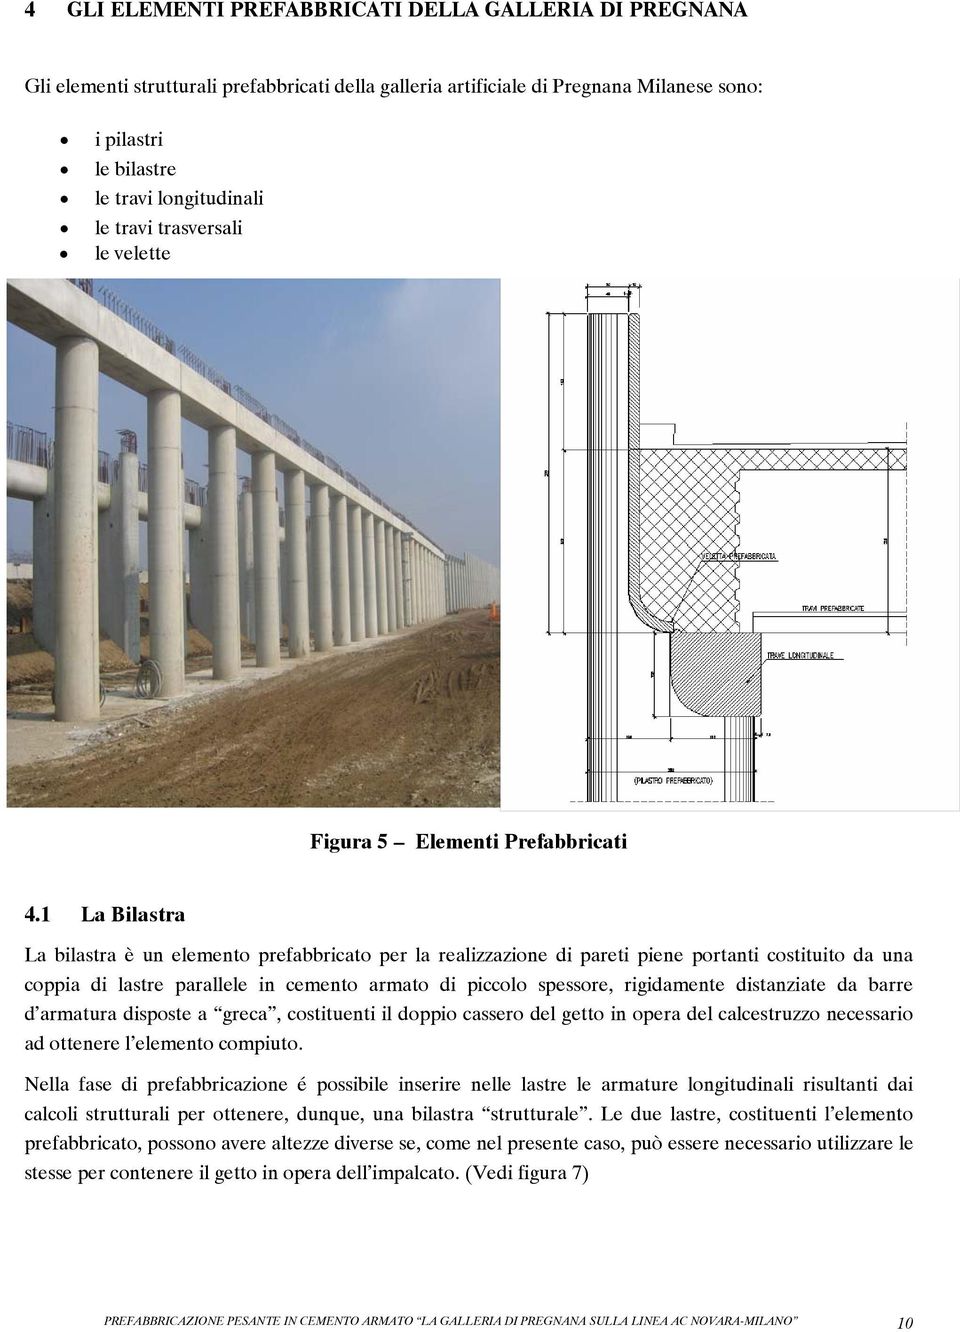 1 La Bilastra La bilastra è un elemento prefabbricato per la realizzazione di pareti piene portanti costituito da una coppia di lastre parallele in cemento armato di piccolo spessore, rigidamente